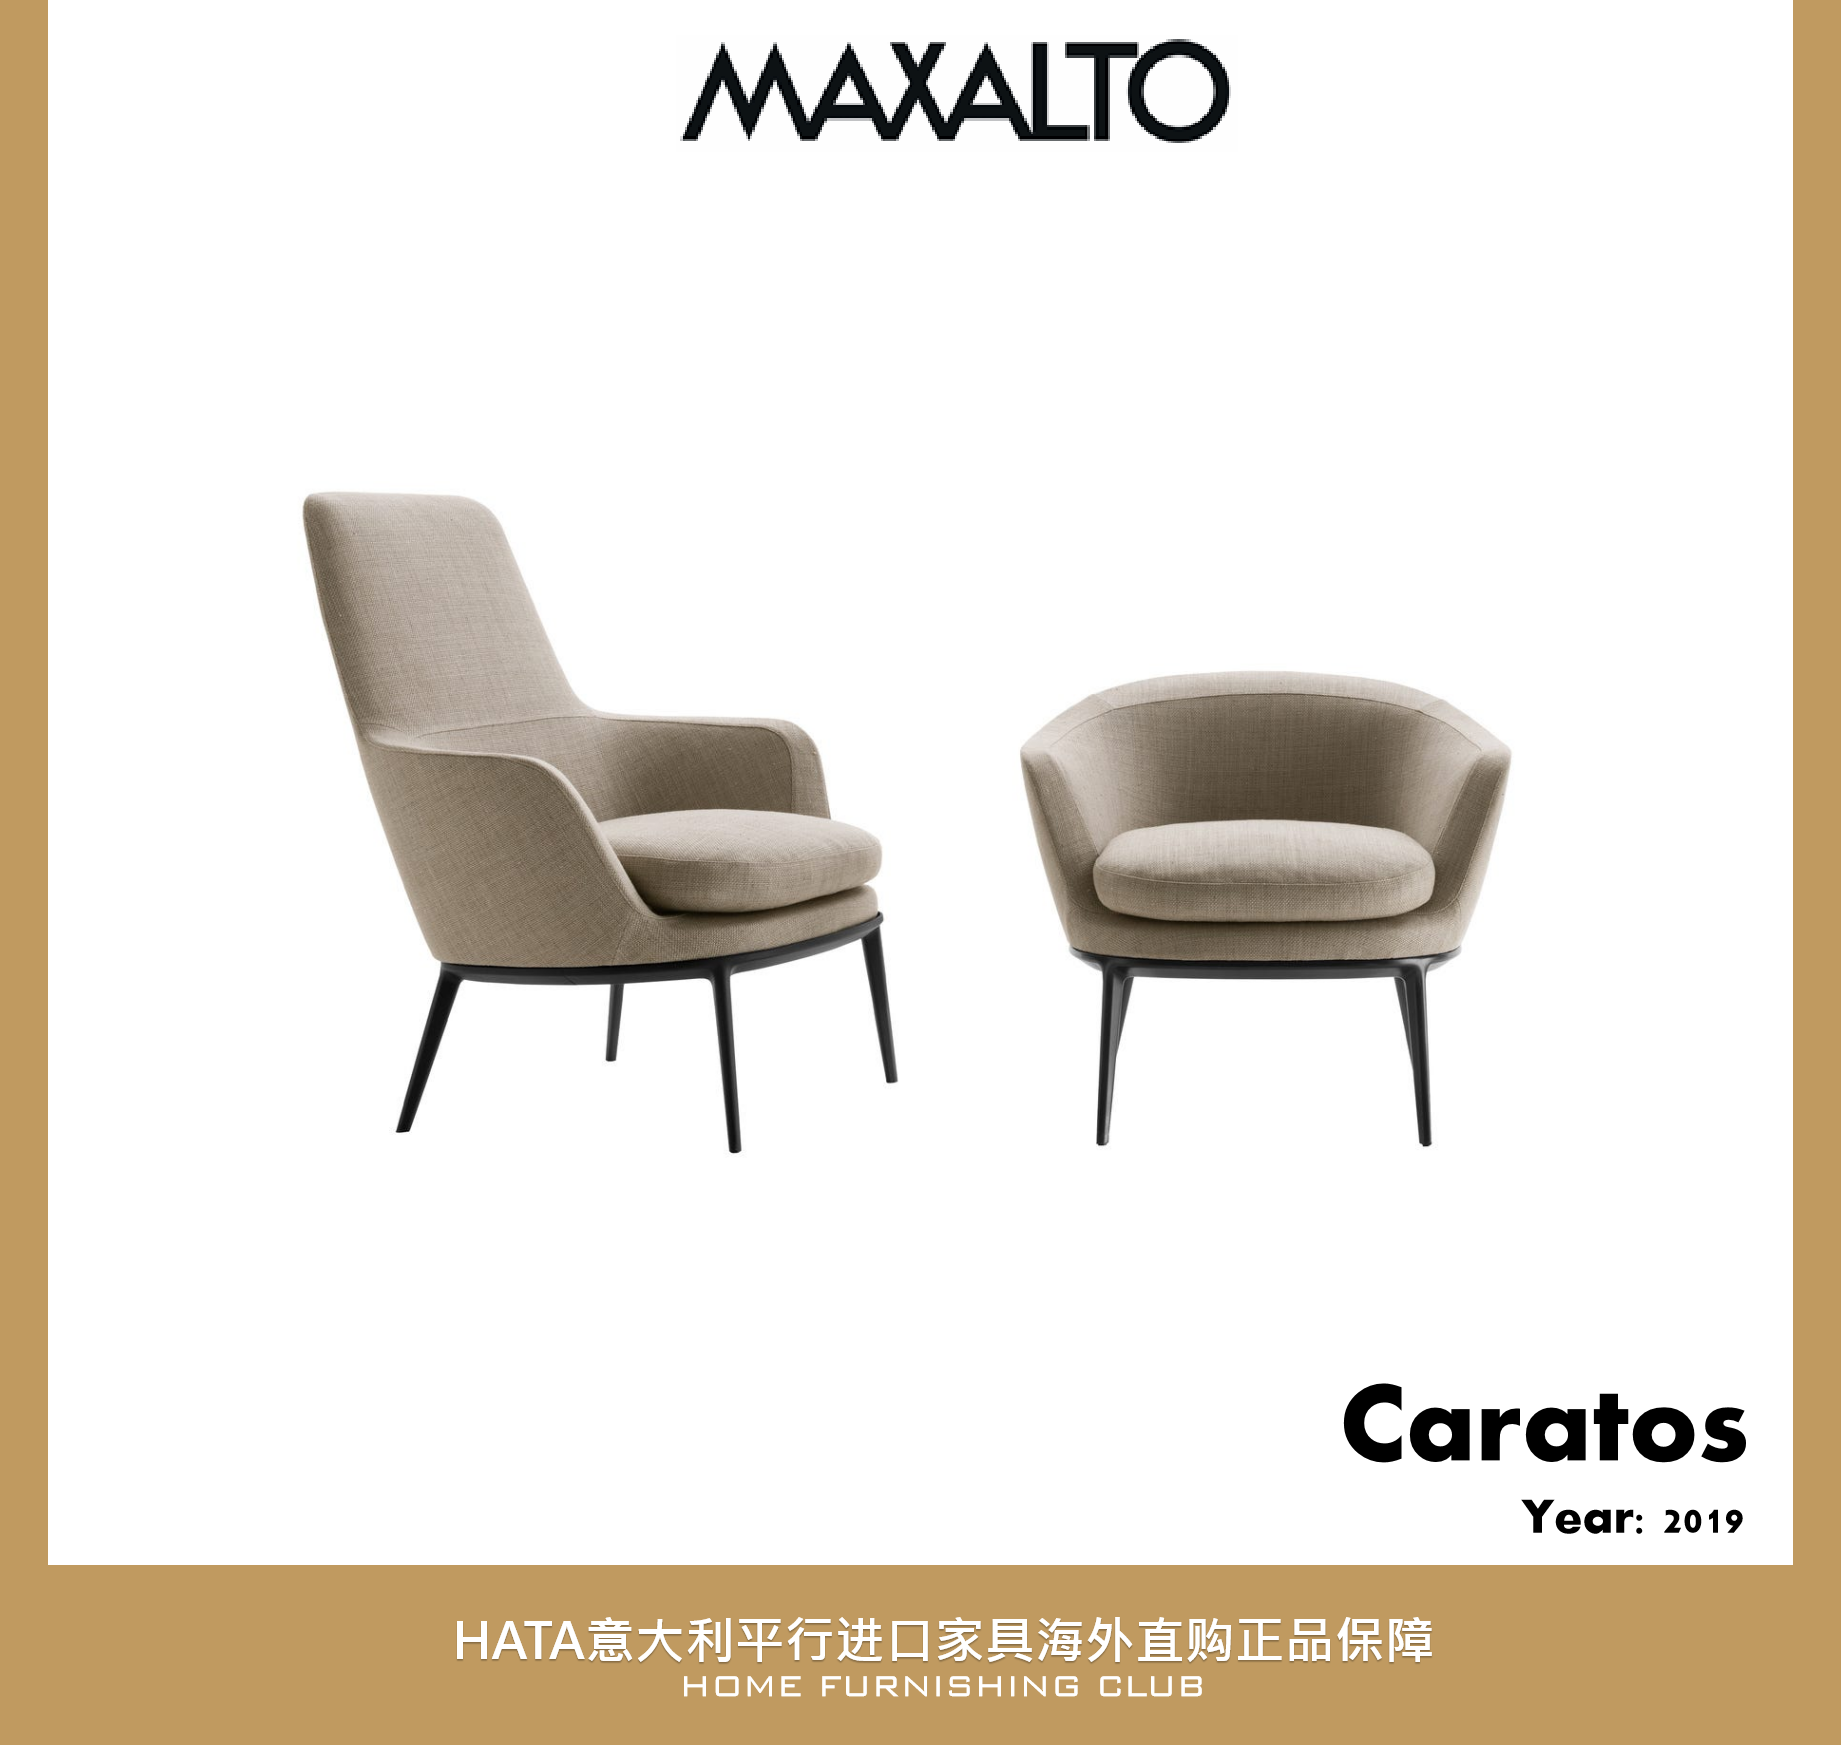 意大利进口家具maxalto 海淘代购B&B 休闲椅单人沙发正版 Caratos